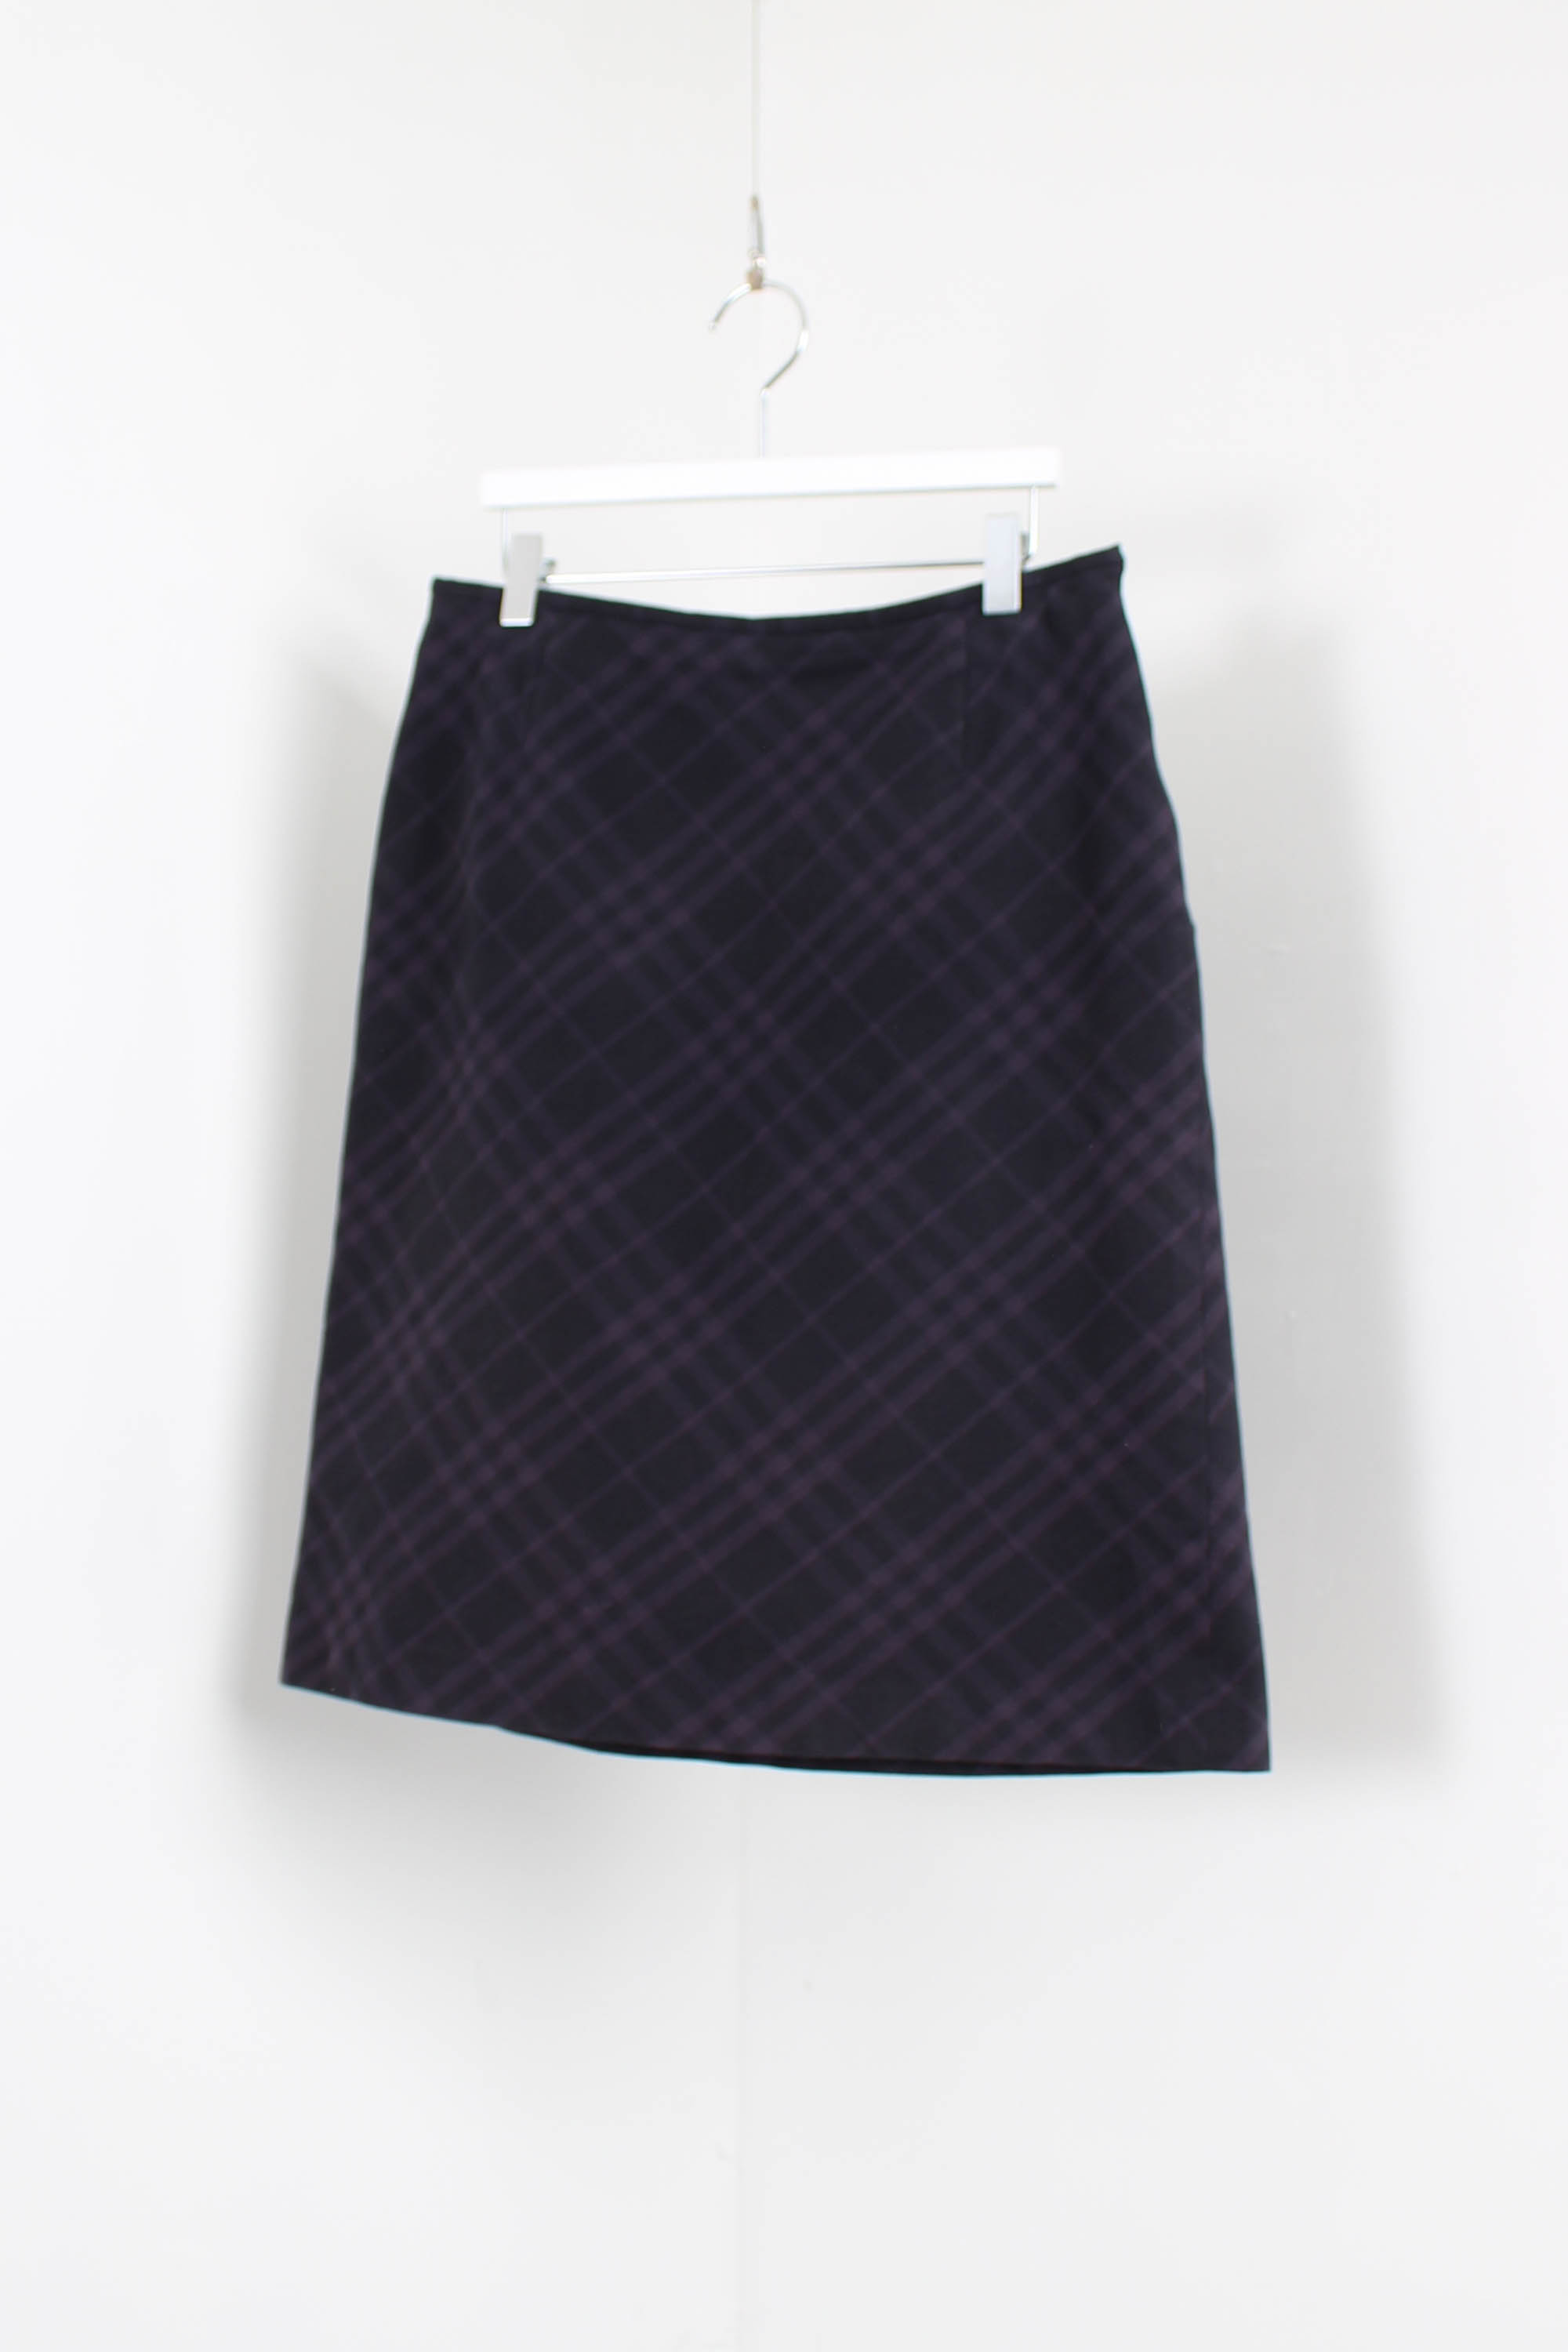 burberry check skirt